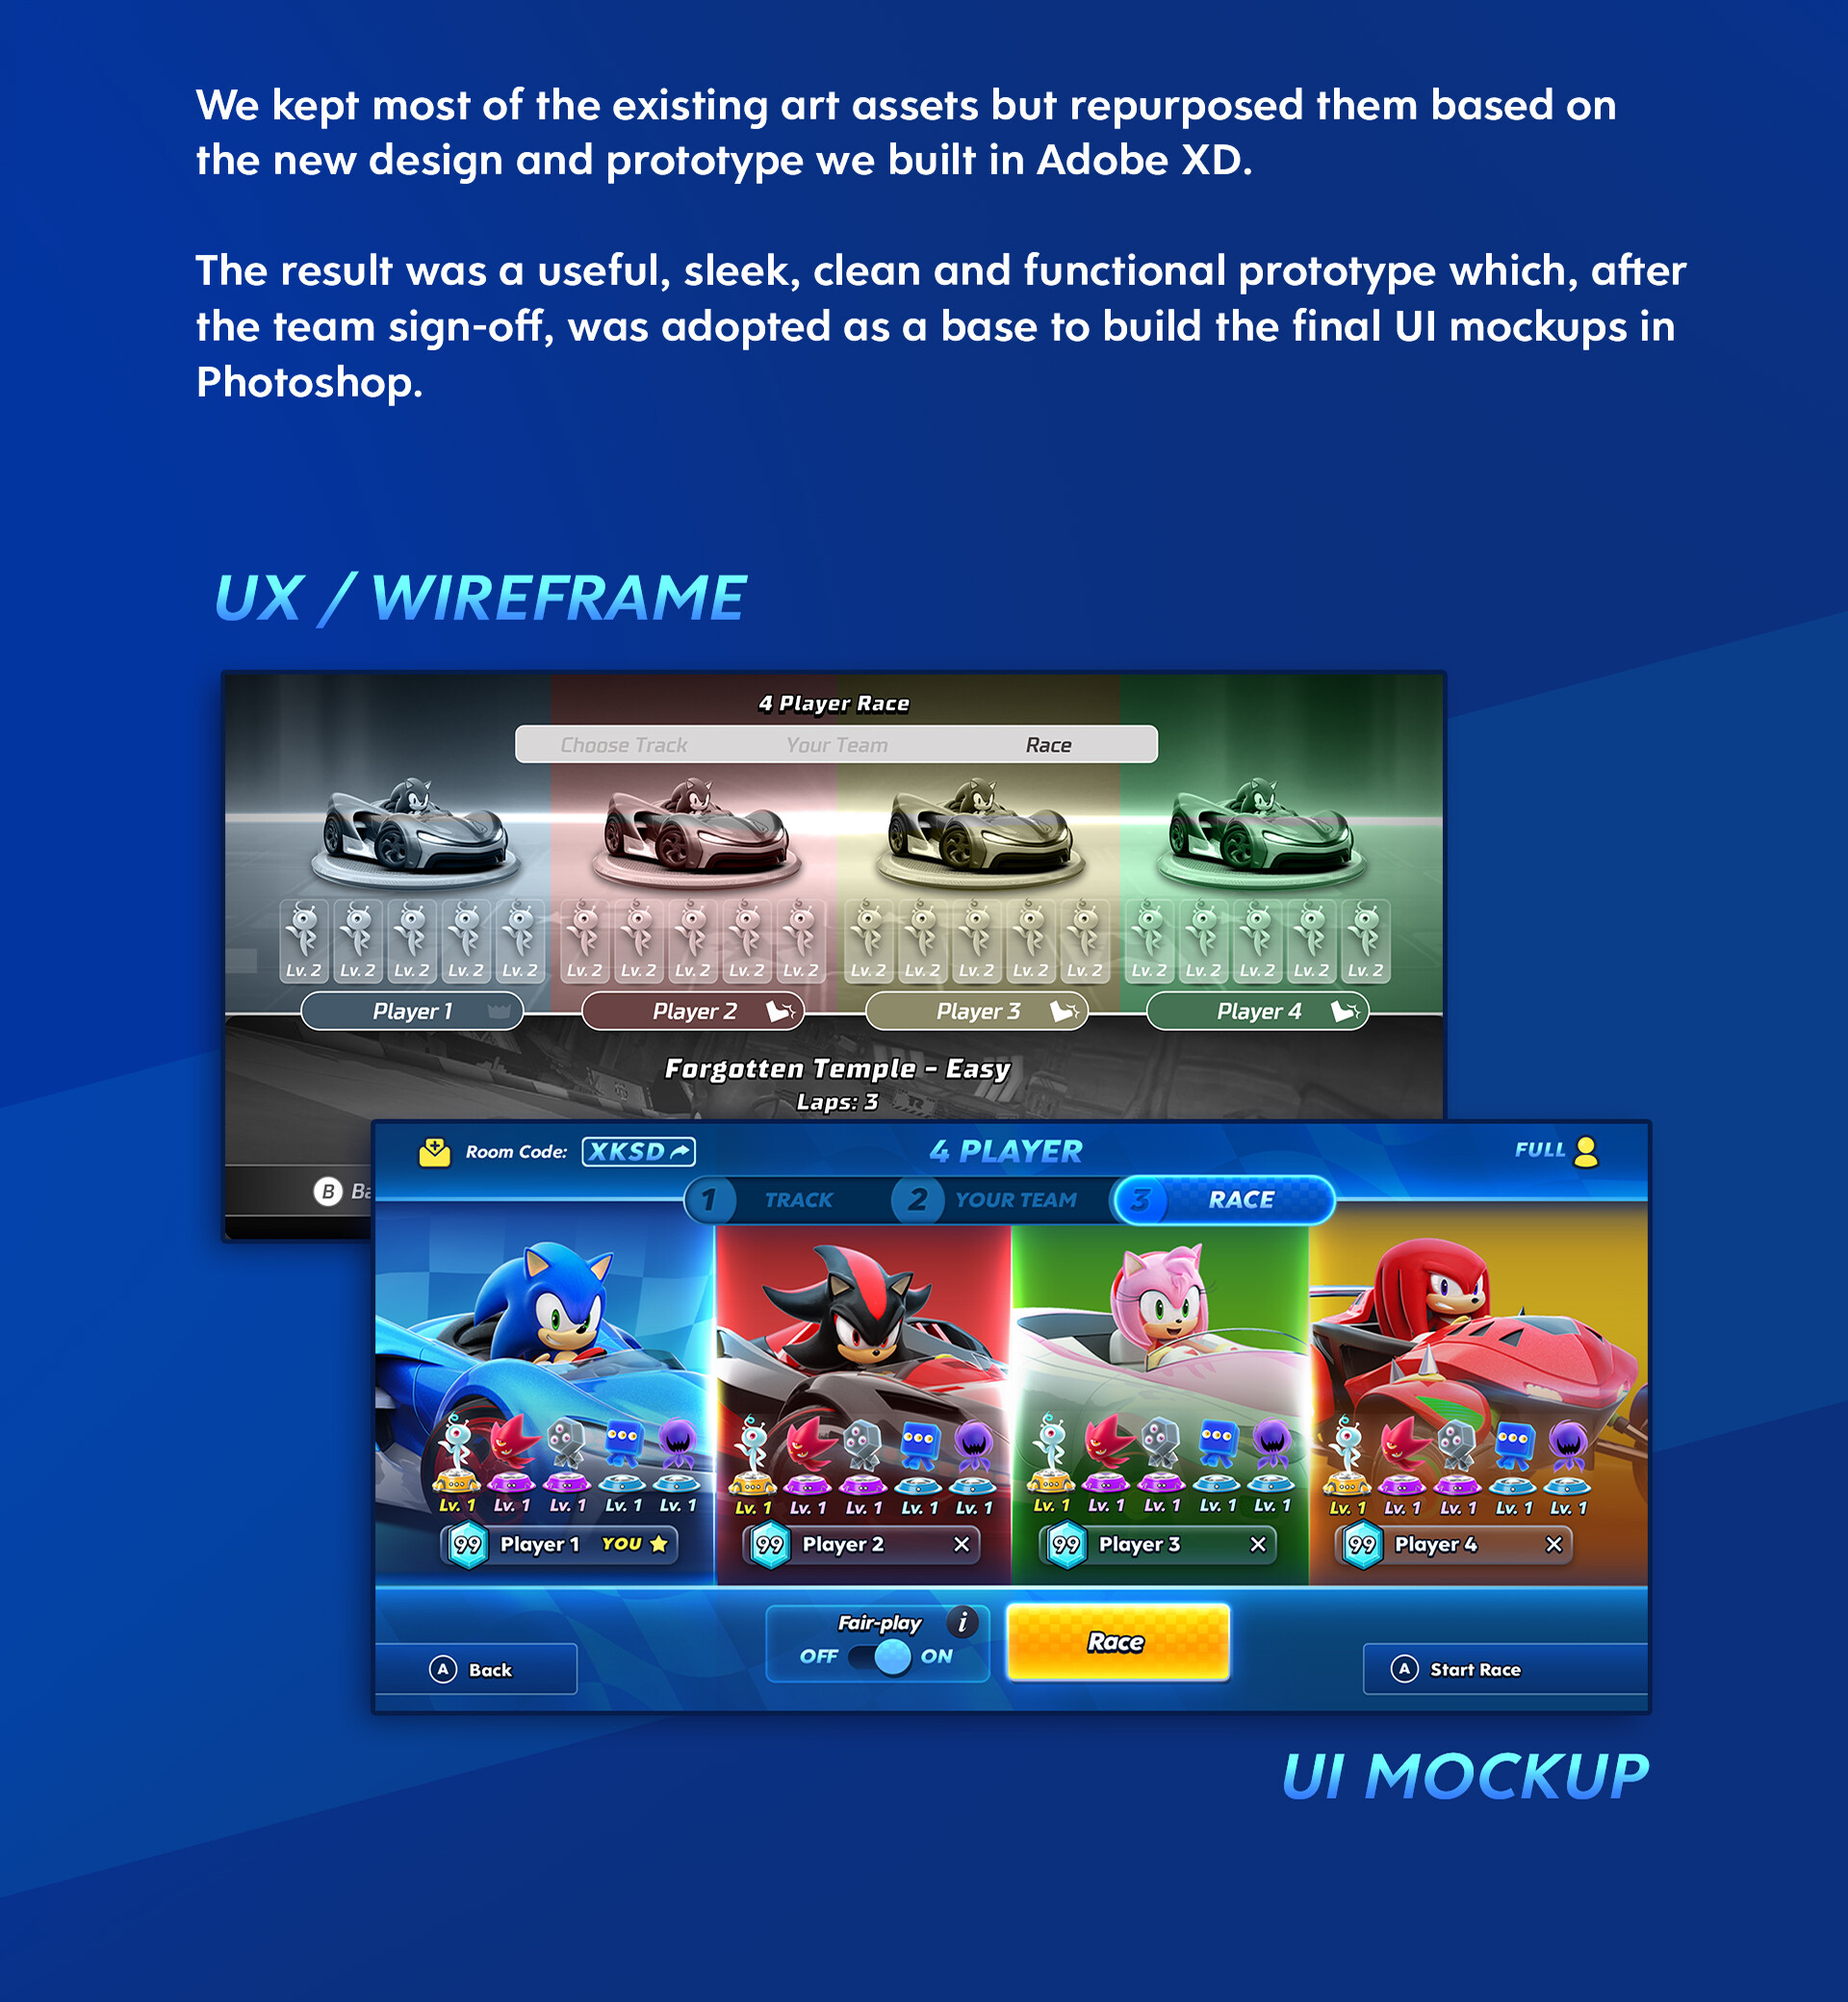 Sonic Game, UI UX Web Design